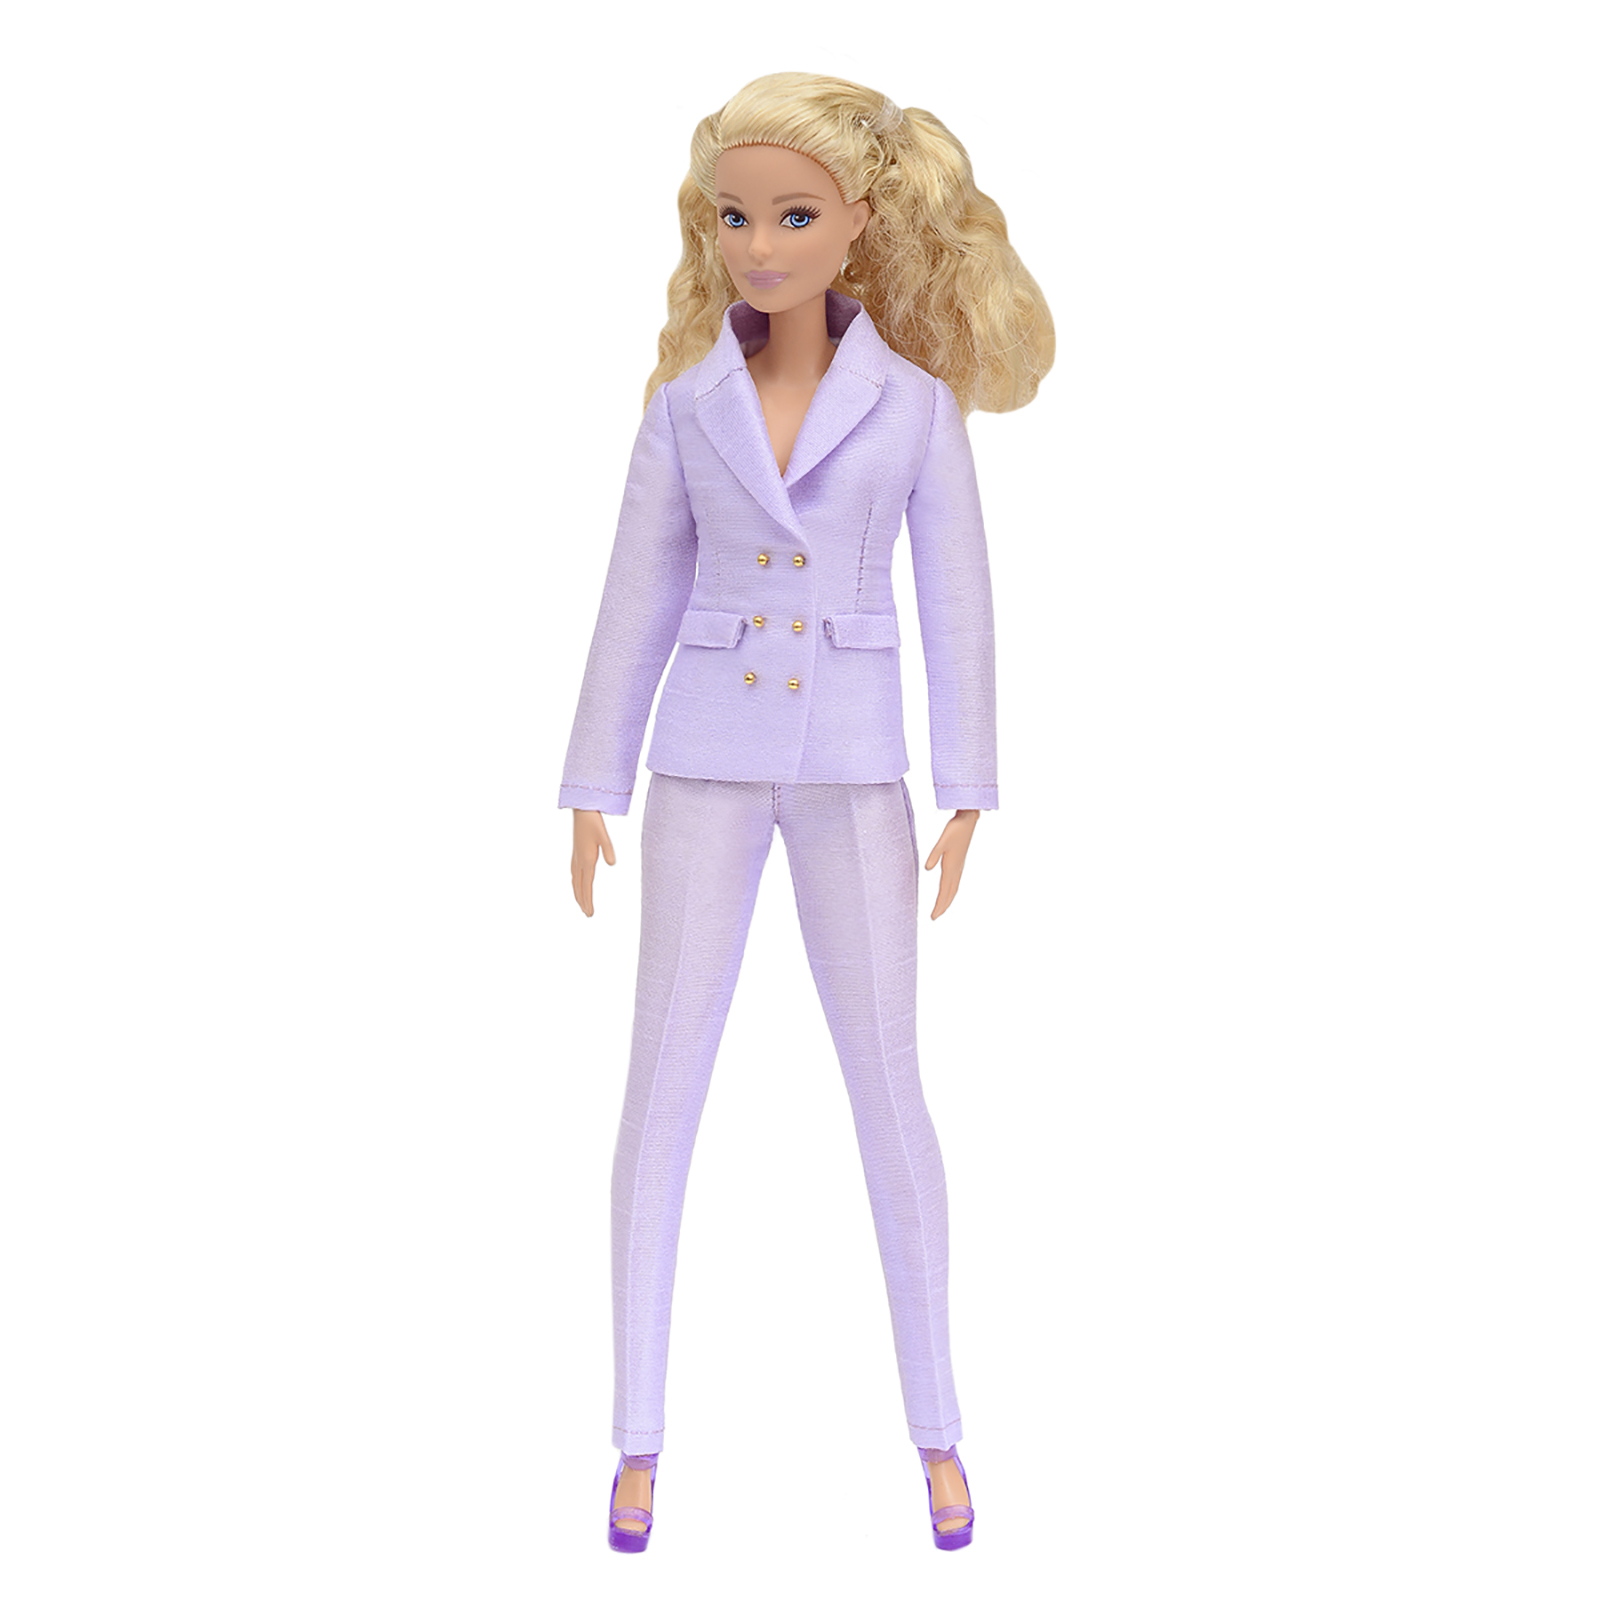 Шелковый брючный костюм Эленприв Фиолетовый для куклы 29 см типа Барби FA-011-11 - фото 1